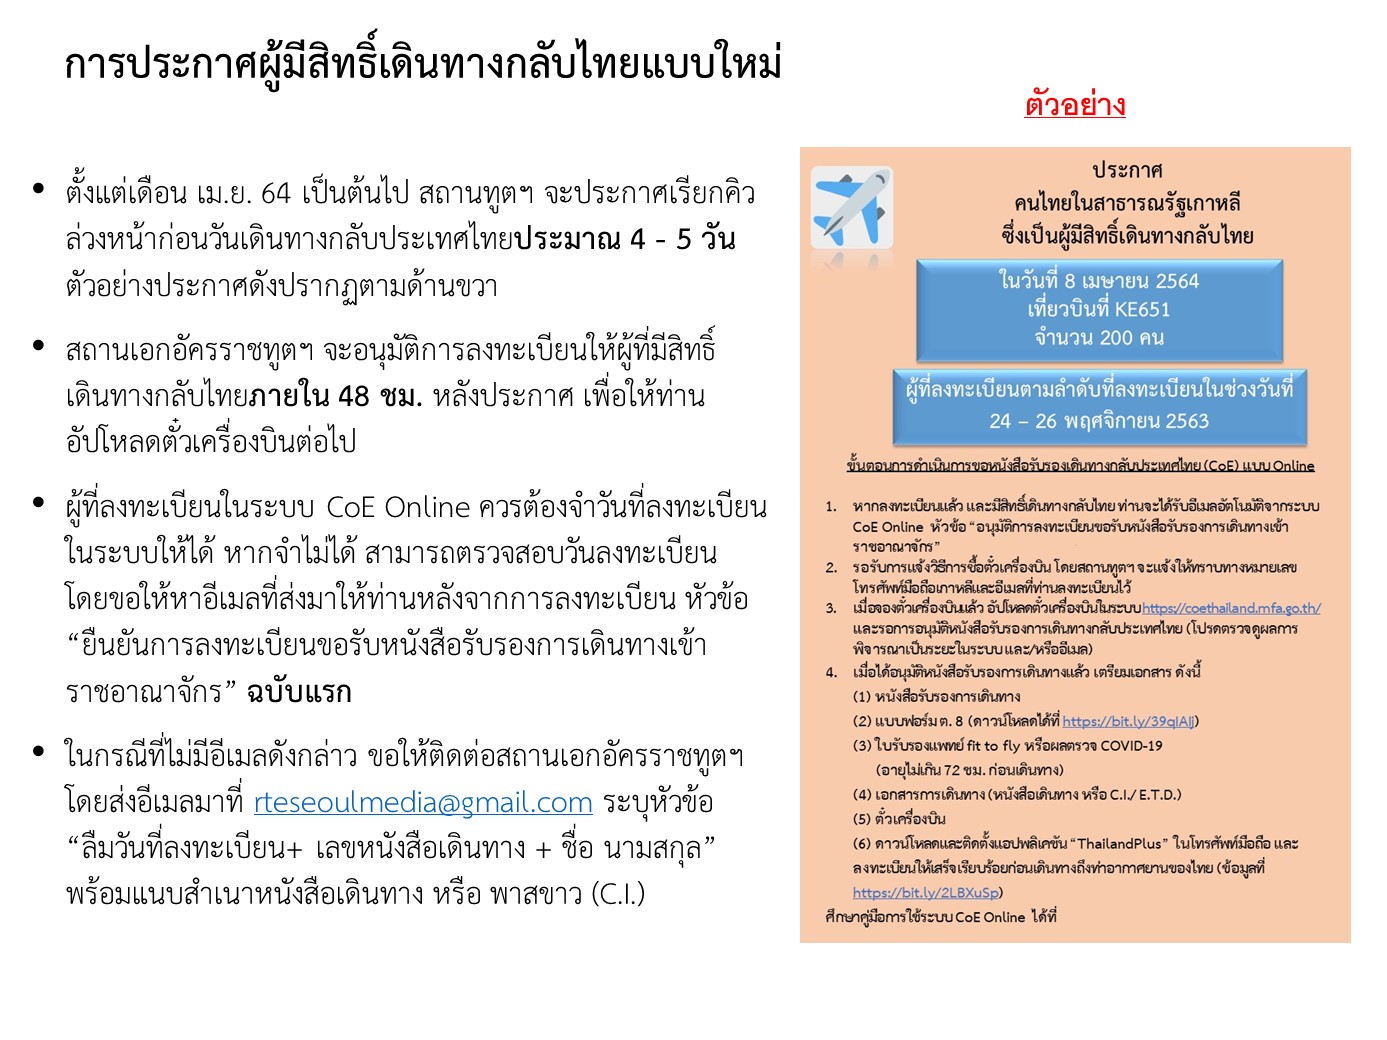 ประกาศวิธีการเรียกคิวตามวันที่ลงทะเบียนเดินทางกลับไทย ตั้งแต่เดือน เม.ย. 64  เป็นต้นไป (เลือกักตัวที่รัฐบาลกำหนดให้ Sq) สำหรับคนไทยในสาธารณรัฐเกาหลี -  สถานเอกอัครราชทูต ณ กรุงโซล